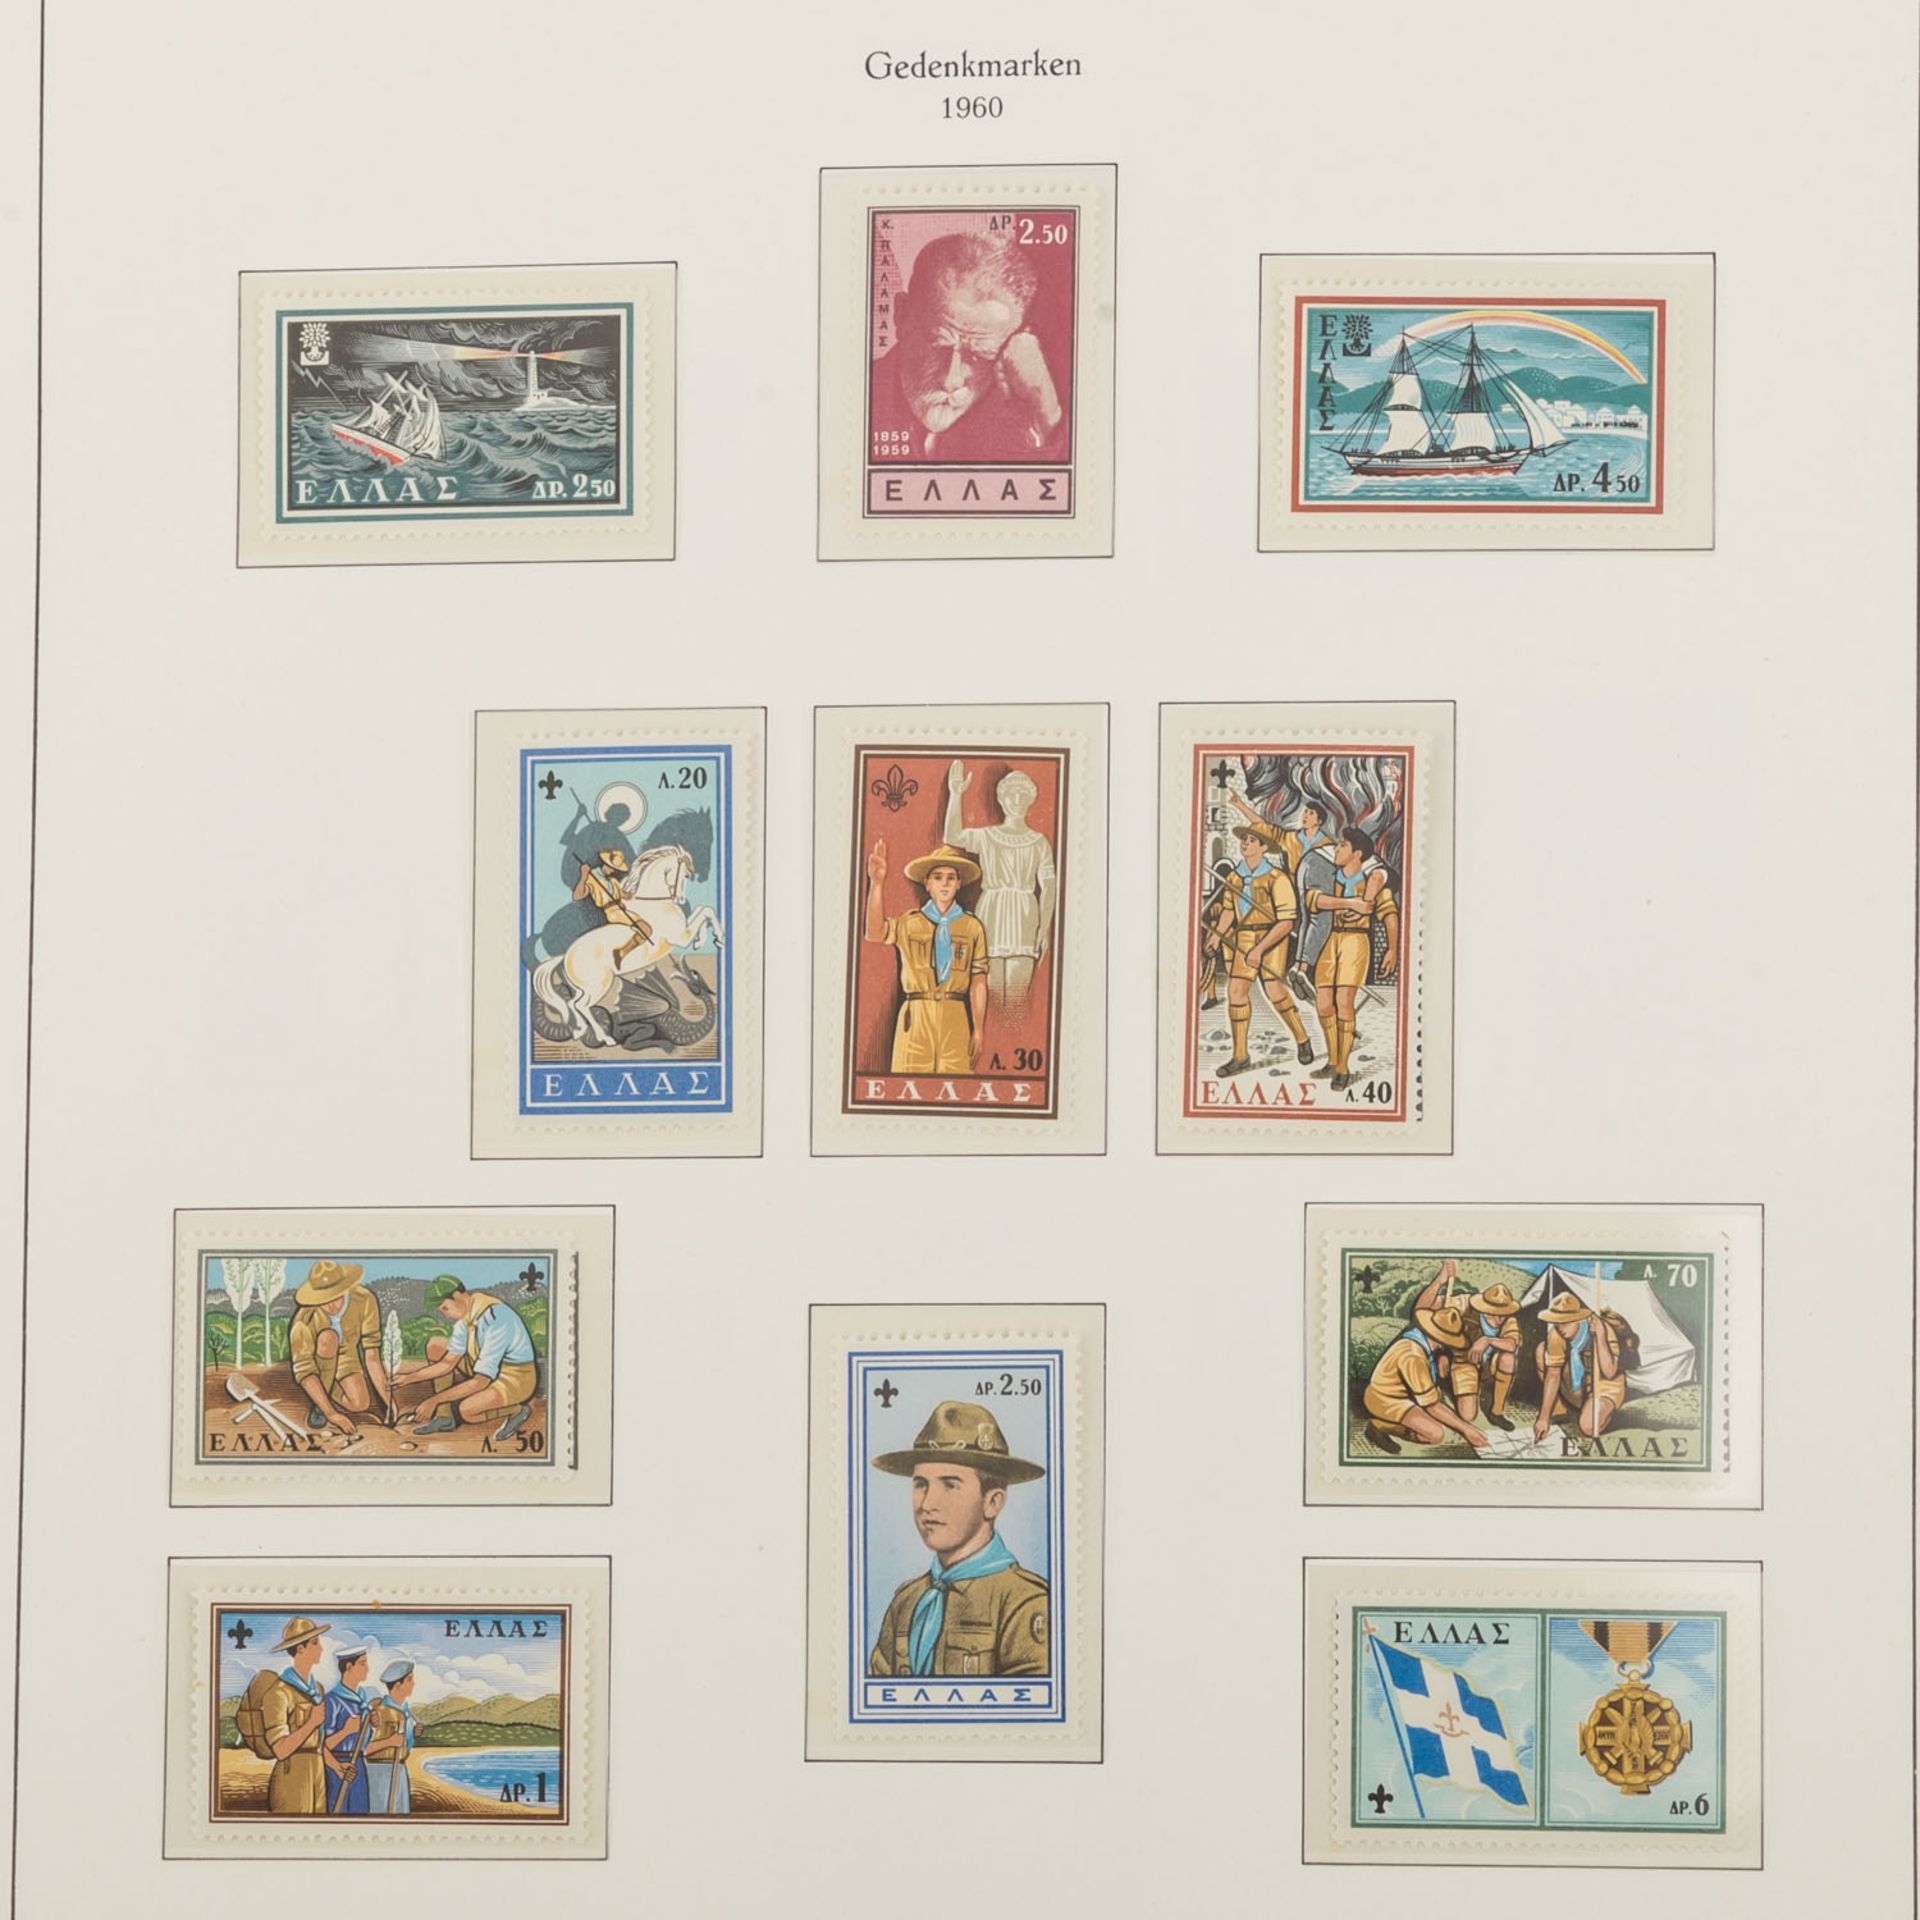 Griechenland - Postfrische Sammlung im Kabeklemmbinder1960-1983. Es fehlen sehr wenige Marken. - Bild 2 aus 4